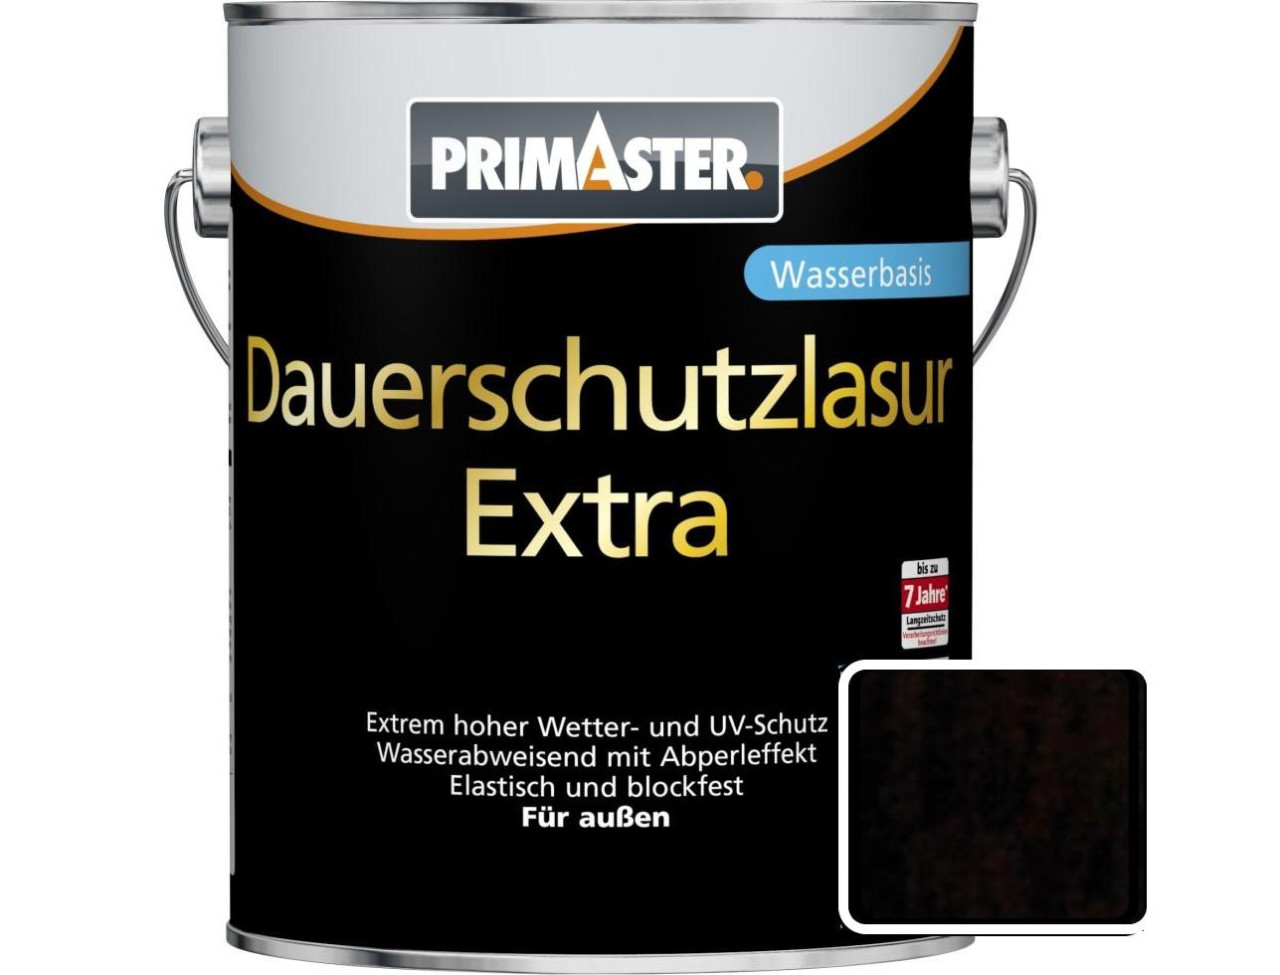 Primaster Dauerschutzlasur Extra 5 L palisander von Primaster